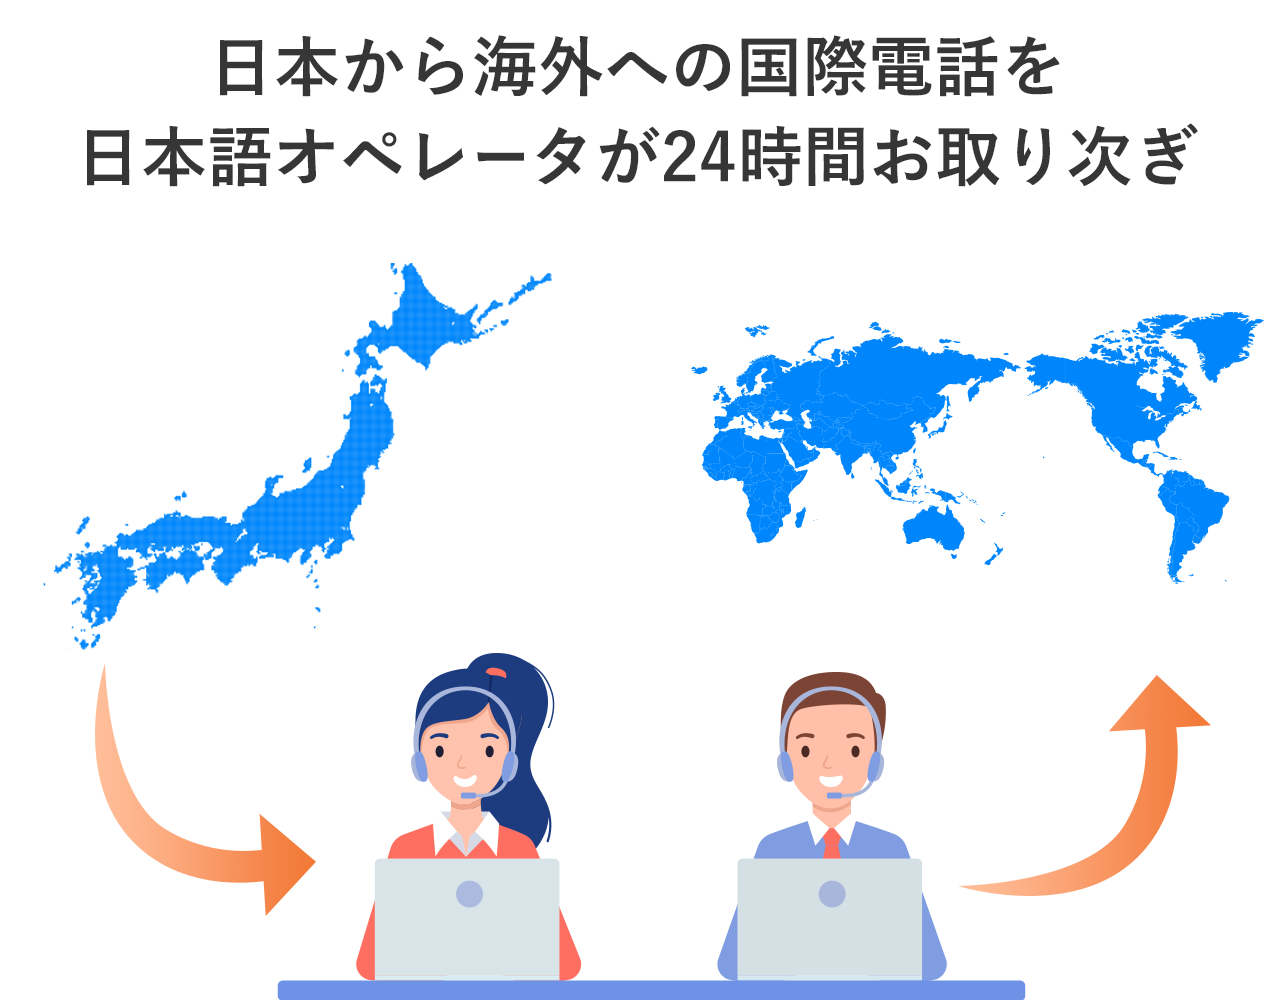 日本から海外への国際電話を日本語オペレータが24時間お取り次ぎ